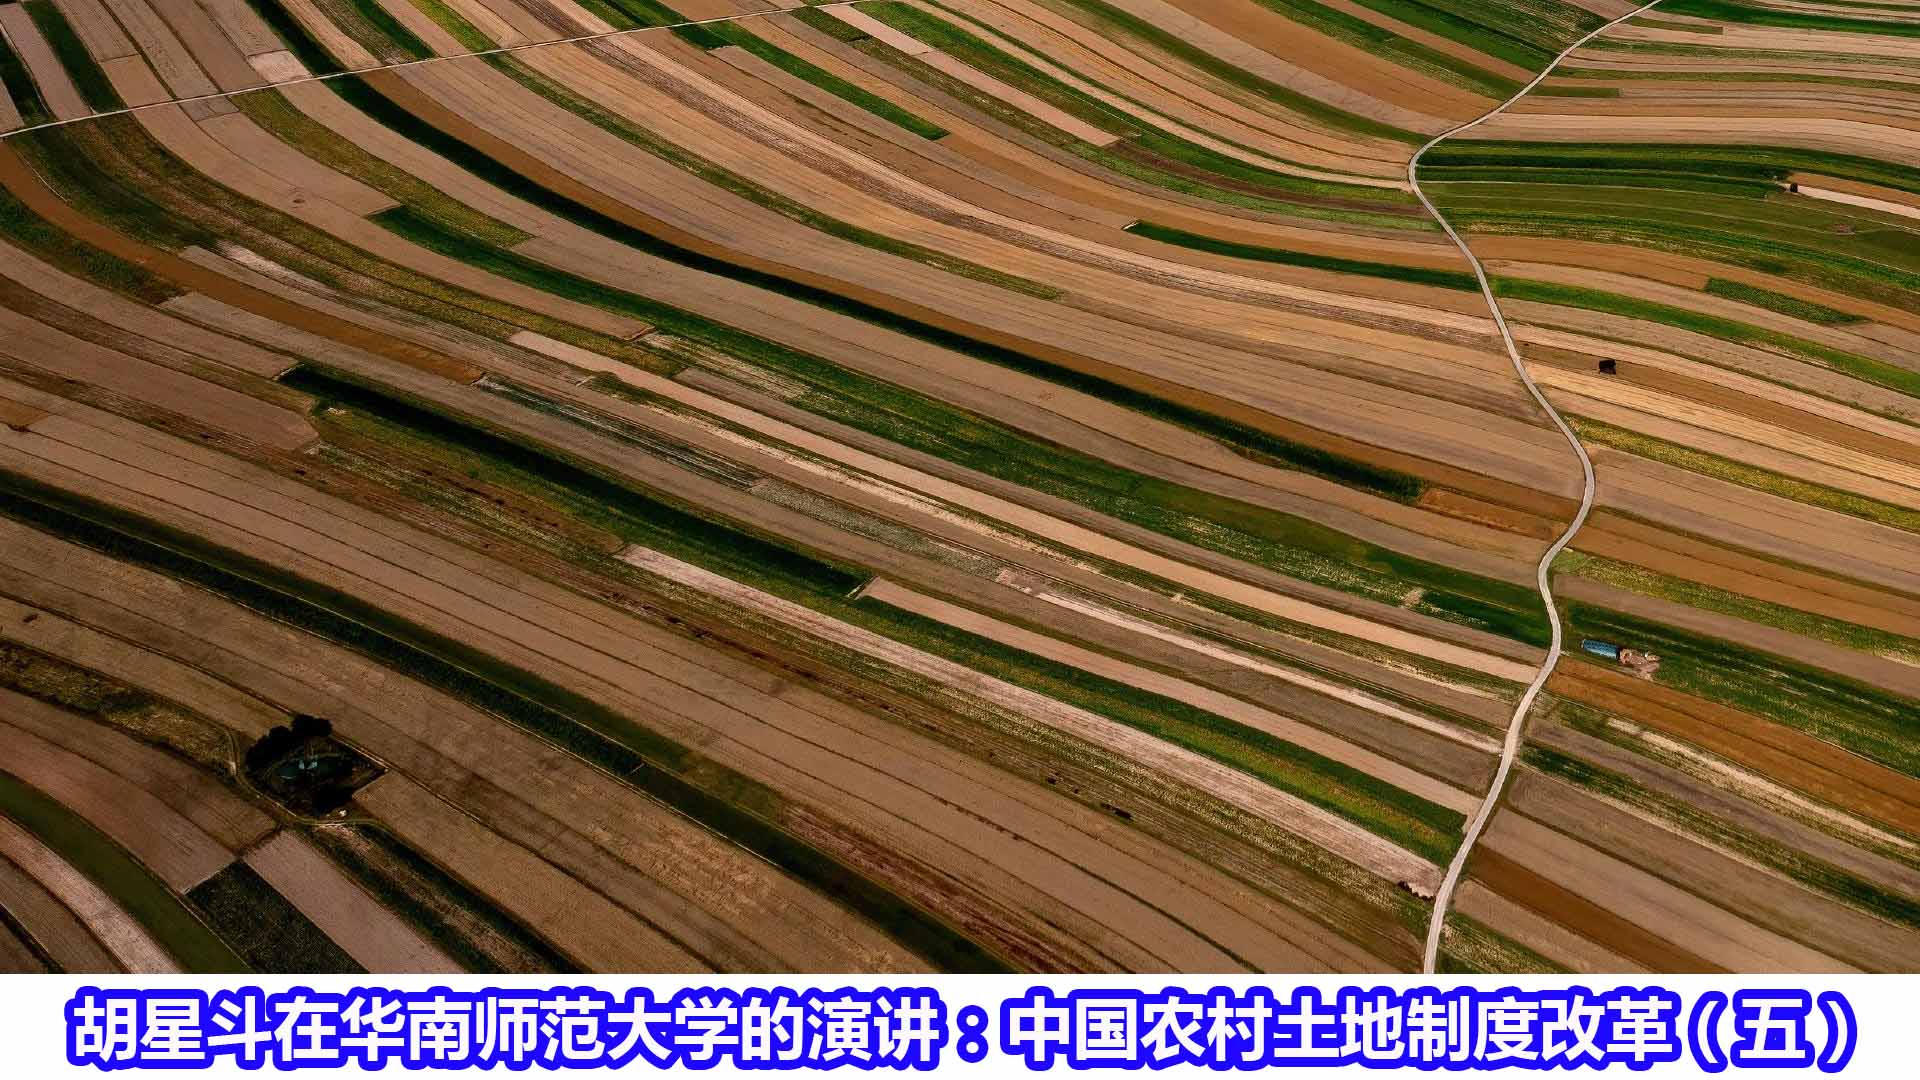 胡星斗在华南师范大学的演讲:中国农村土地制度改革(五)